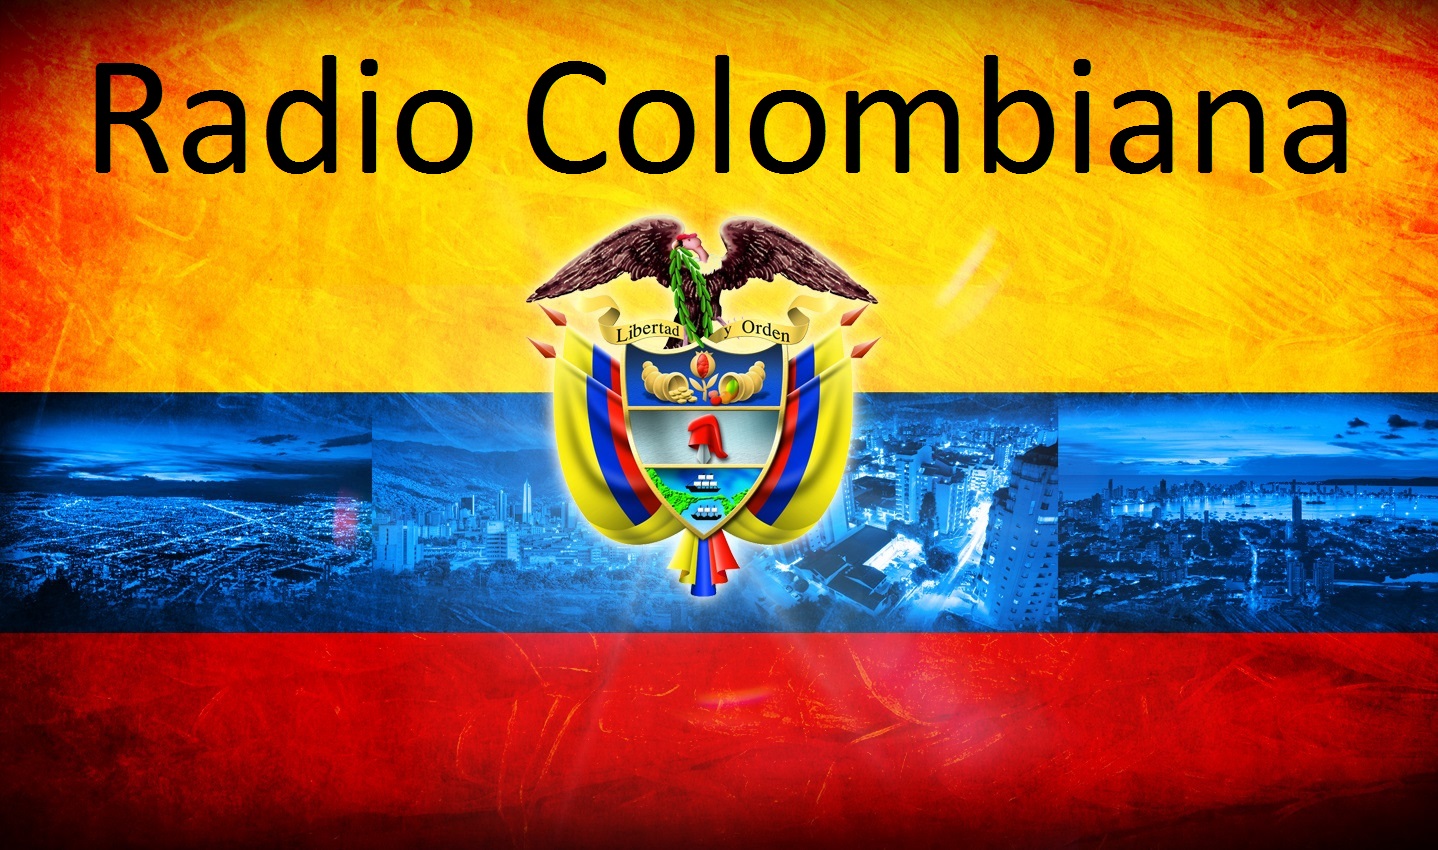 Radio Colombiana